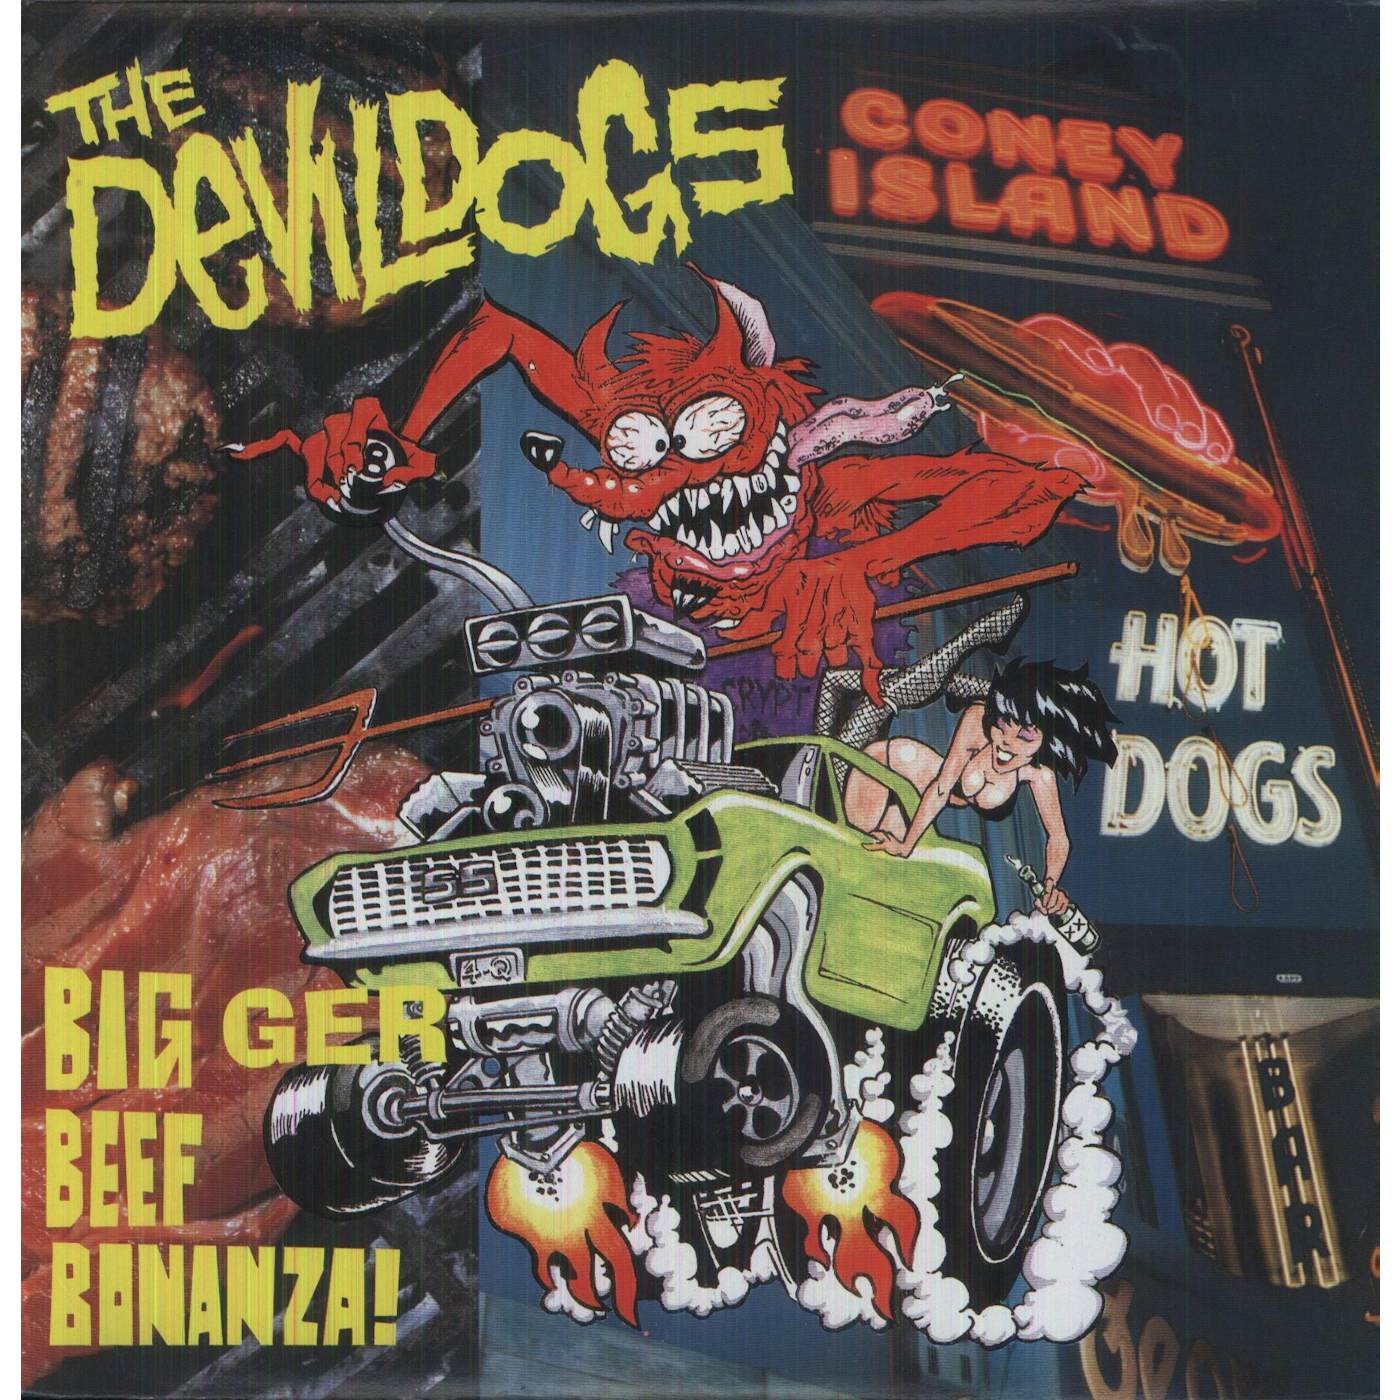 The Devil Dogs BIGGER BEEF BONANZA Vinyl Record